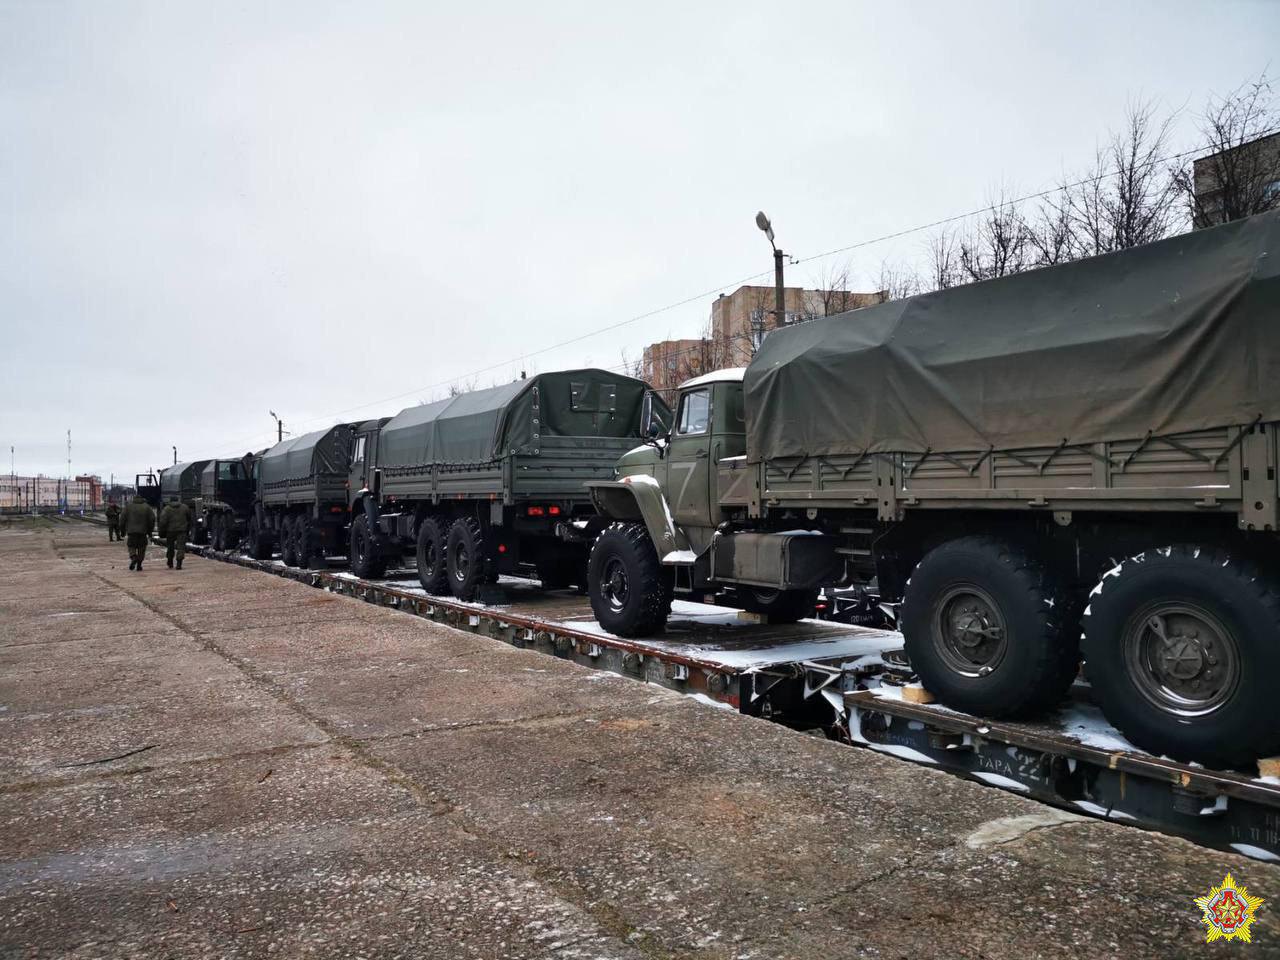 Російська техніка та військові прибувають для розміщення на базу полігону Обуз-Лісновський поблизу Барановичів, Білорусь.